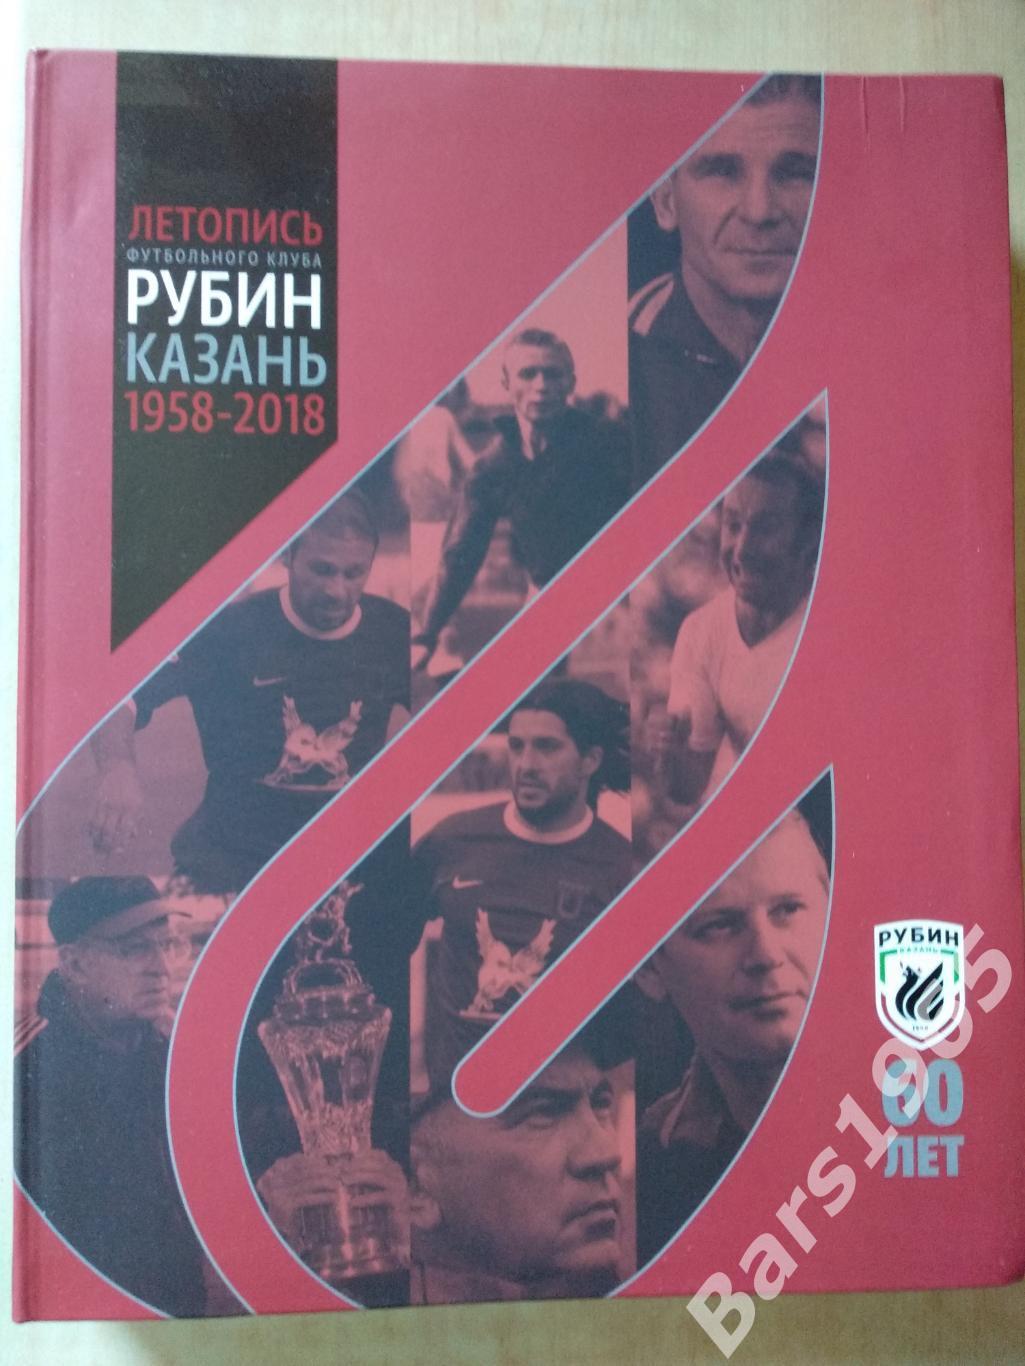 Летопись футбольного клуба Рубин Казань 1958-2018 - 60 лет